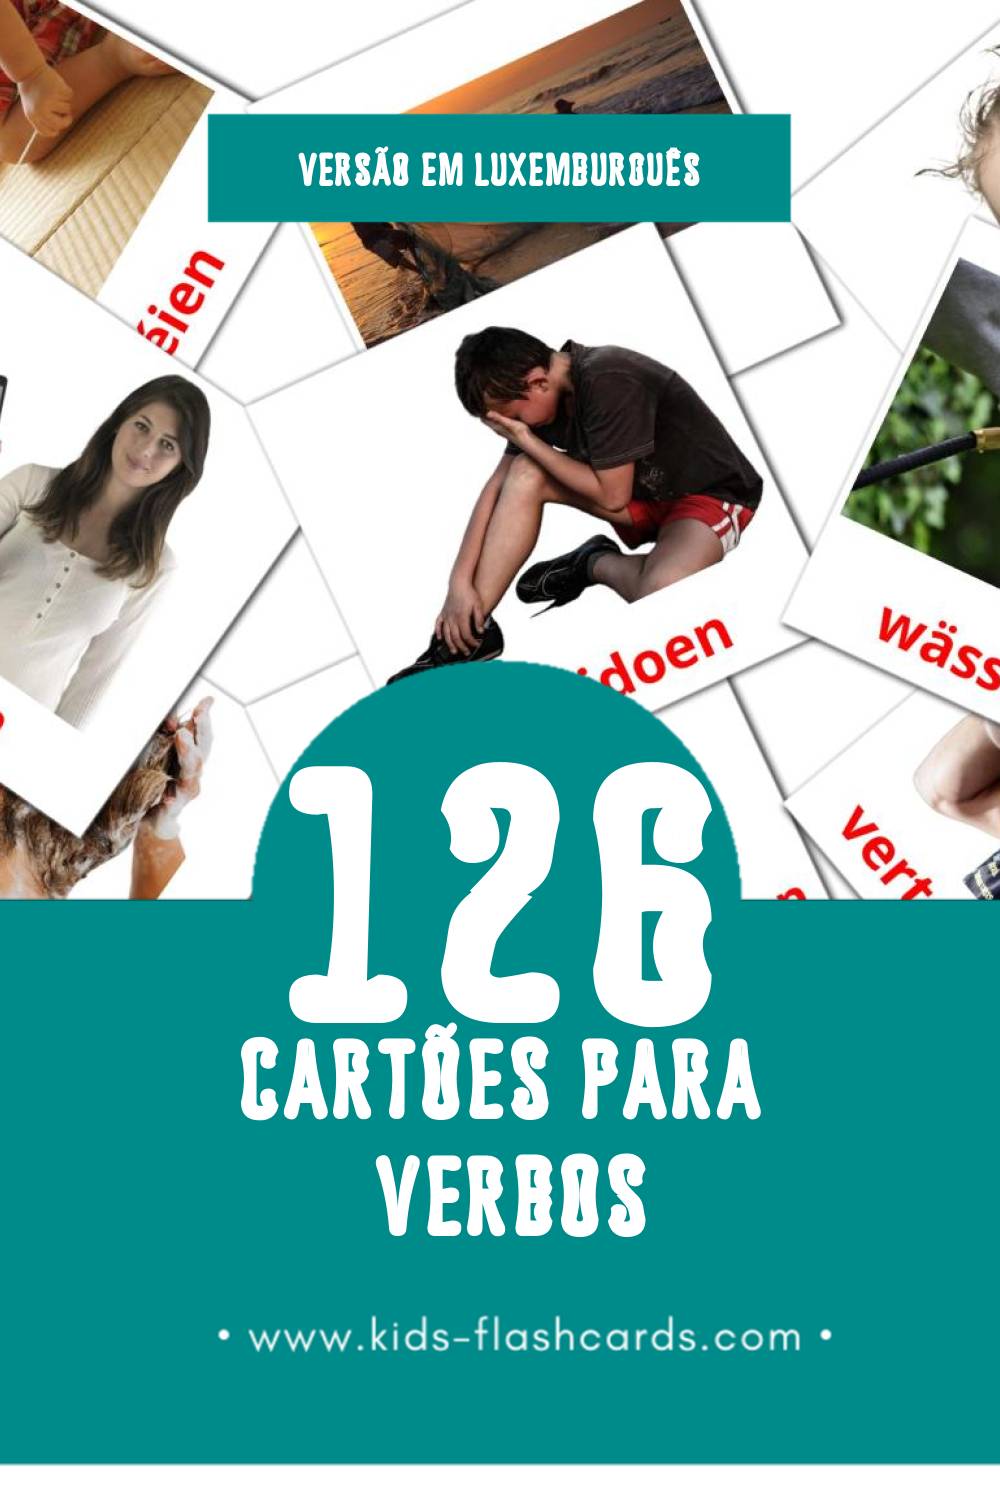 Flashcards de Verben Visuais para Toddlers (126 cartões em Luxemburguês)